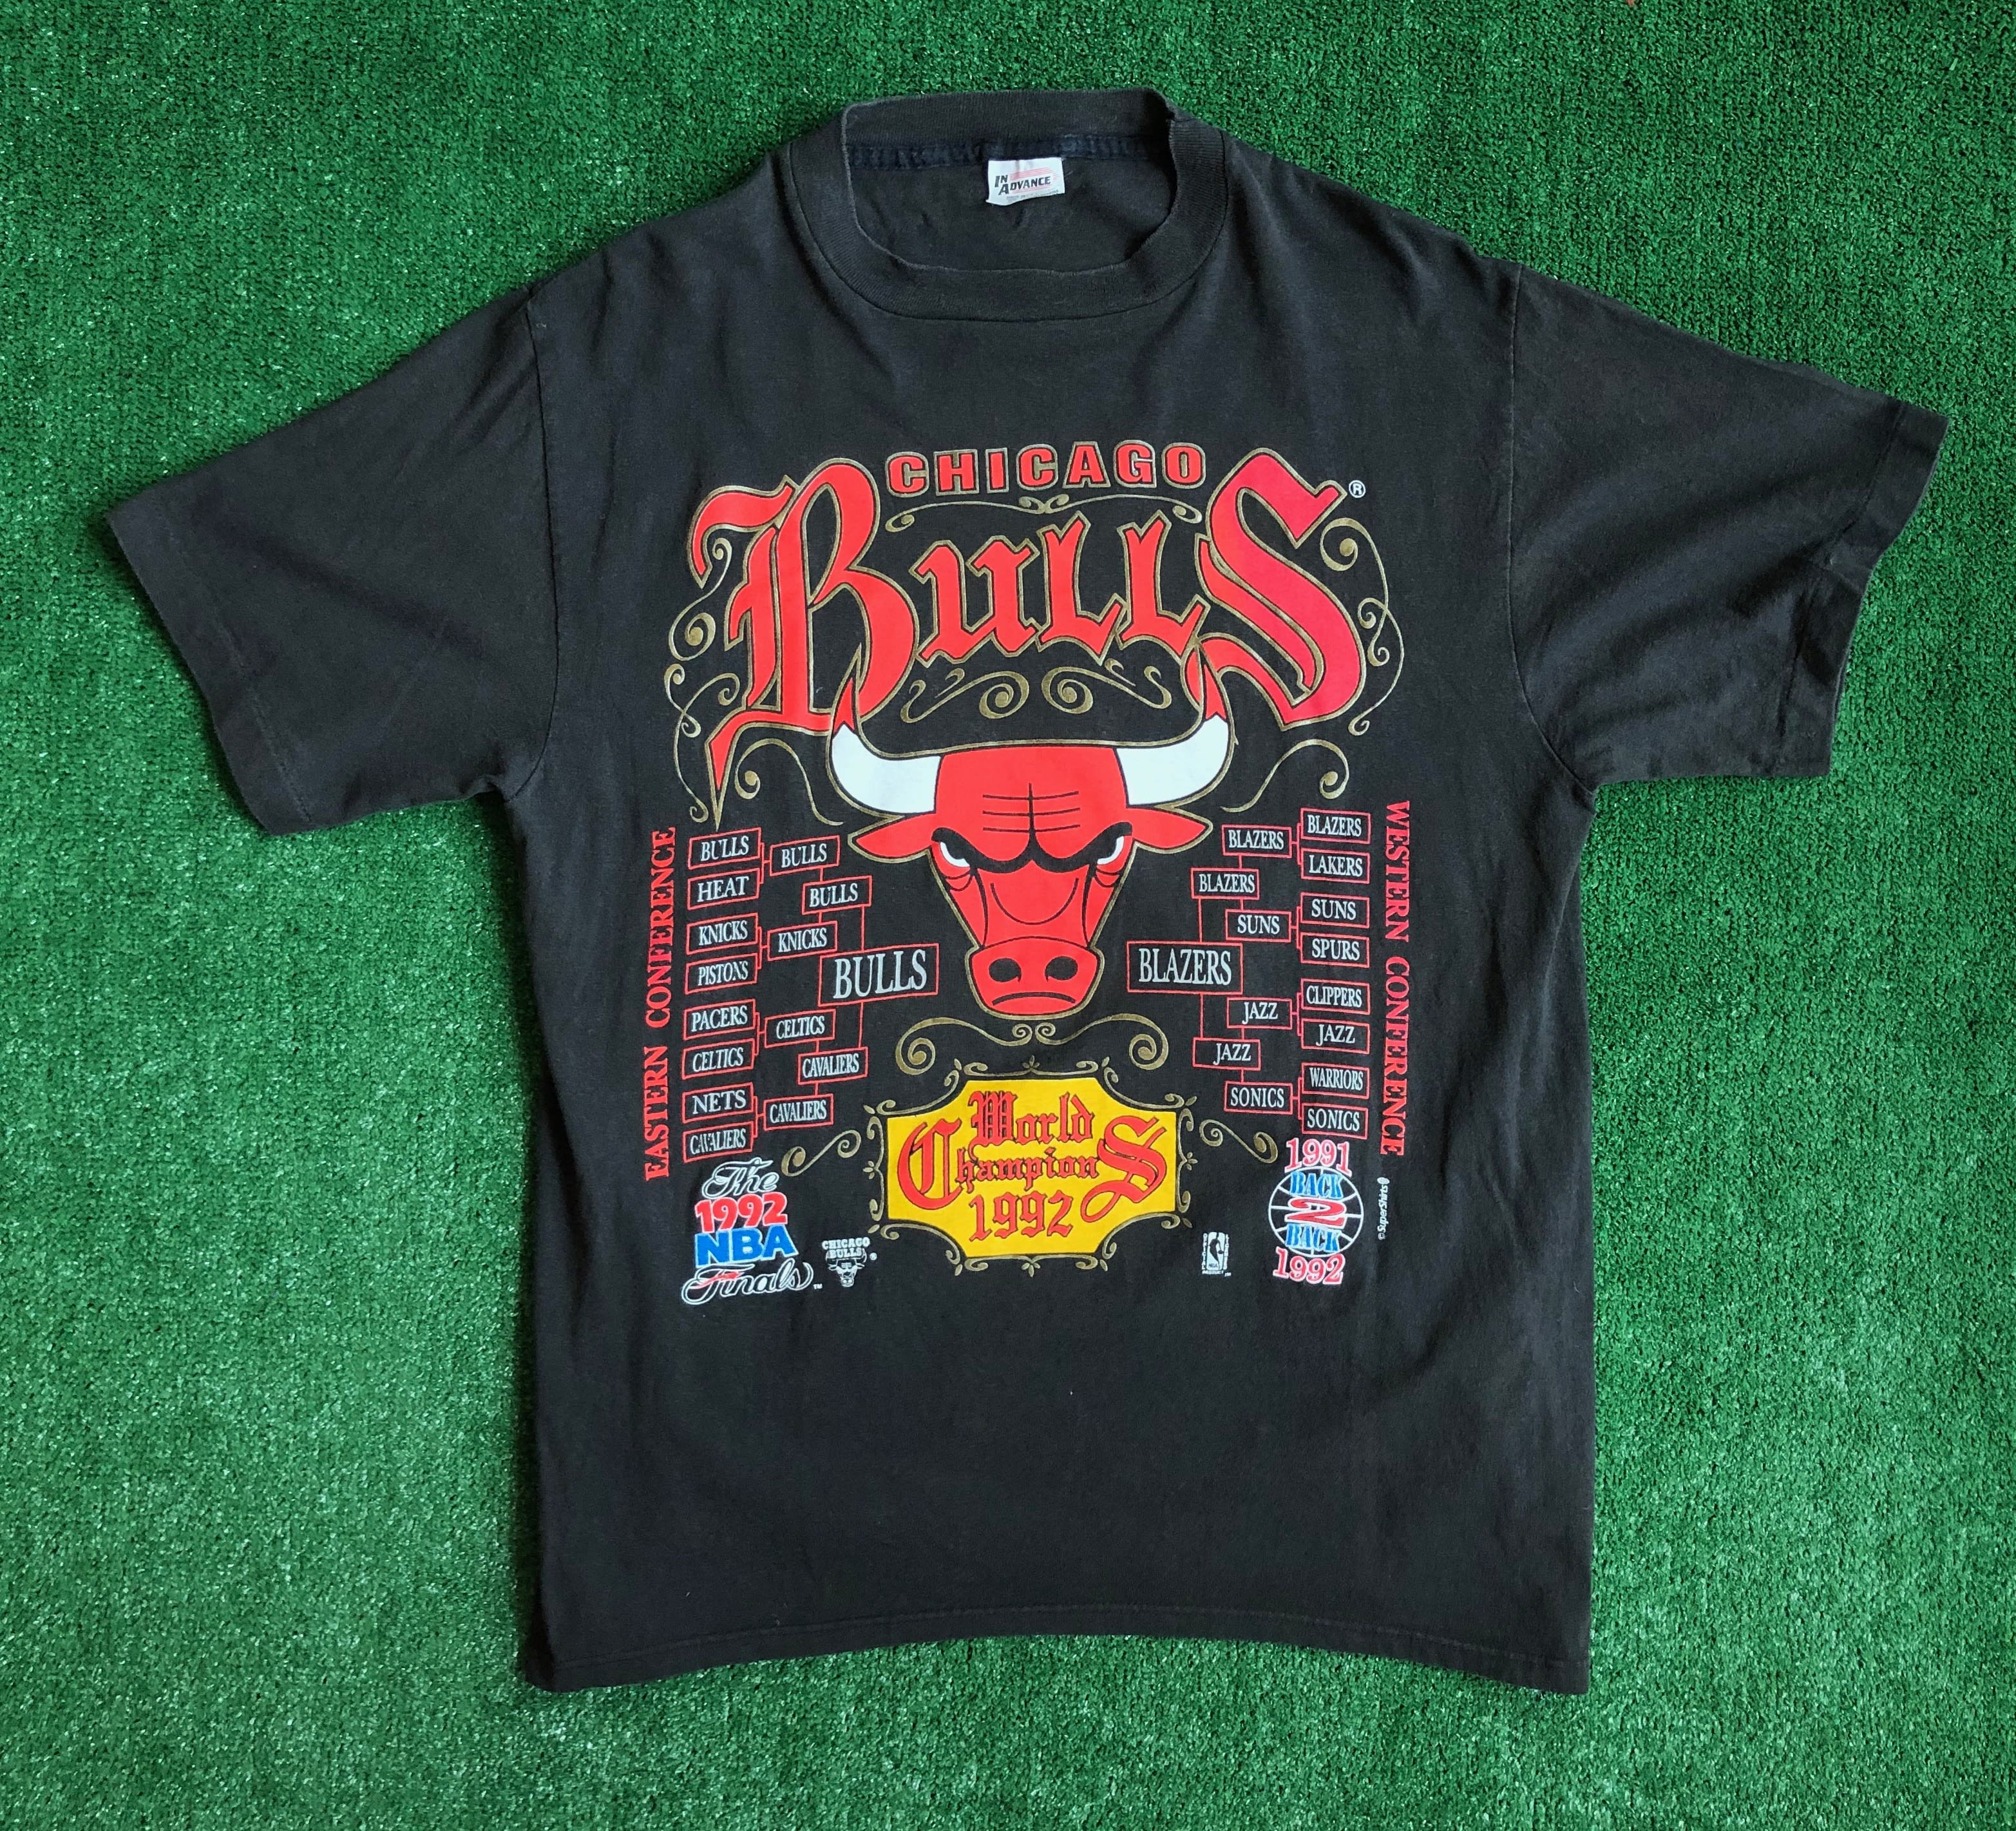 unique bulls shirts